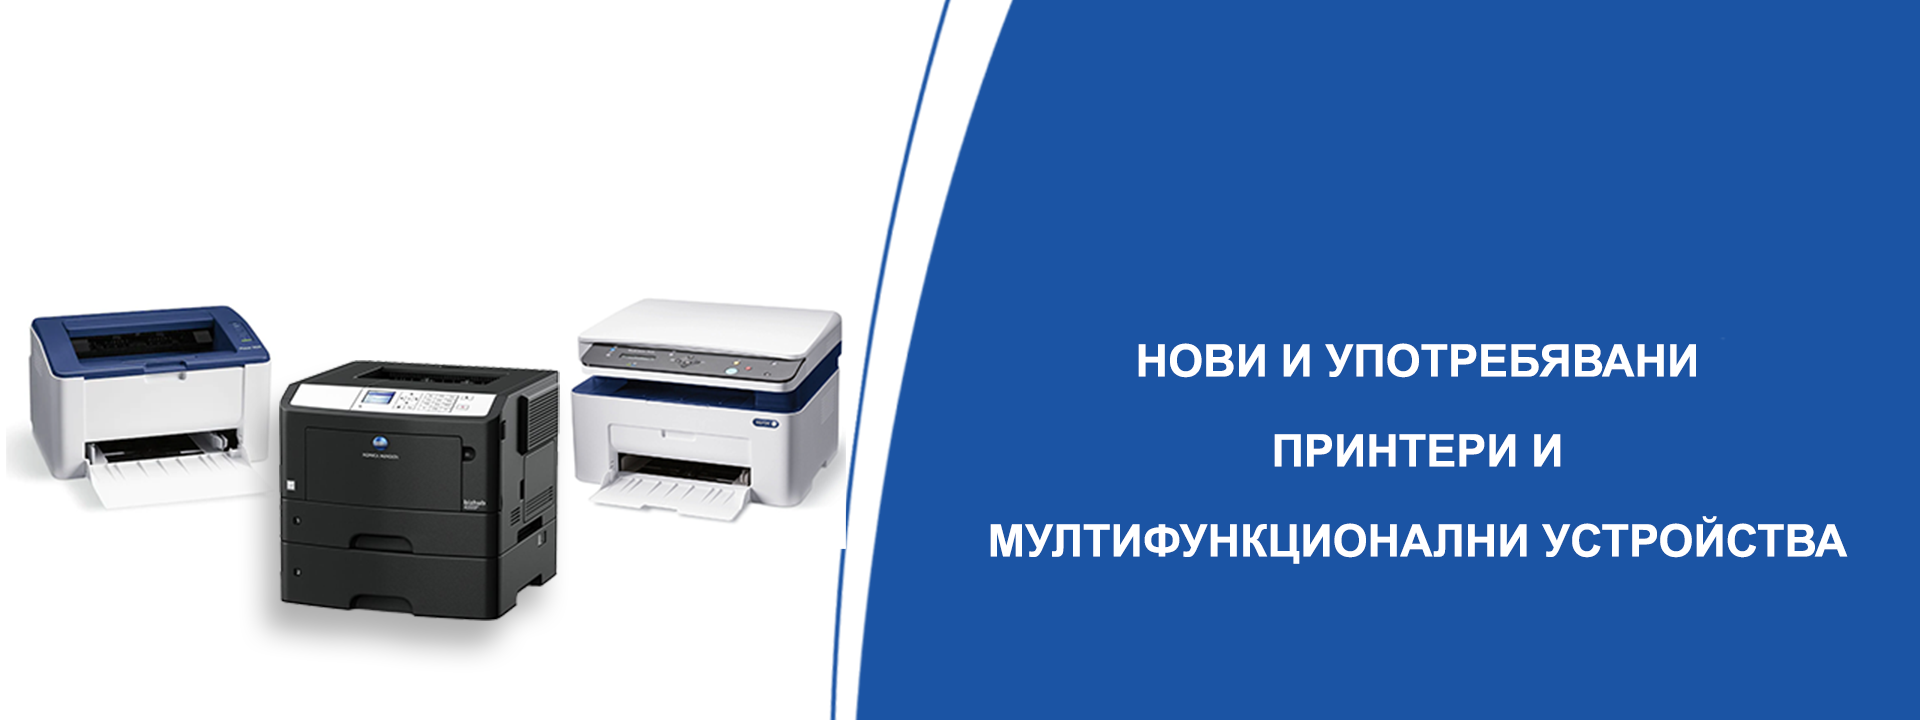 нови и употребявани принтери